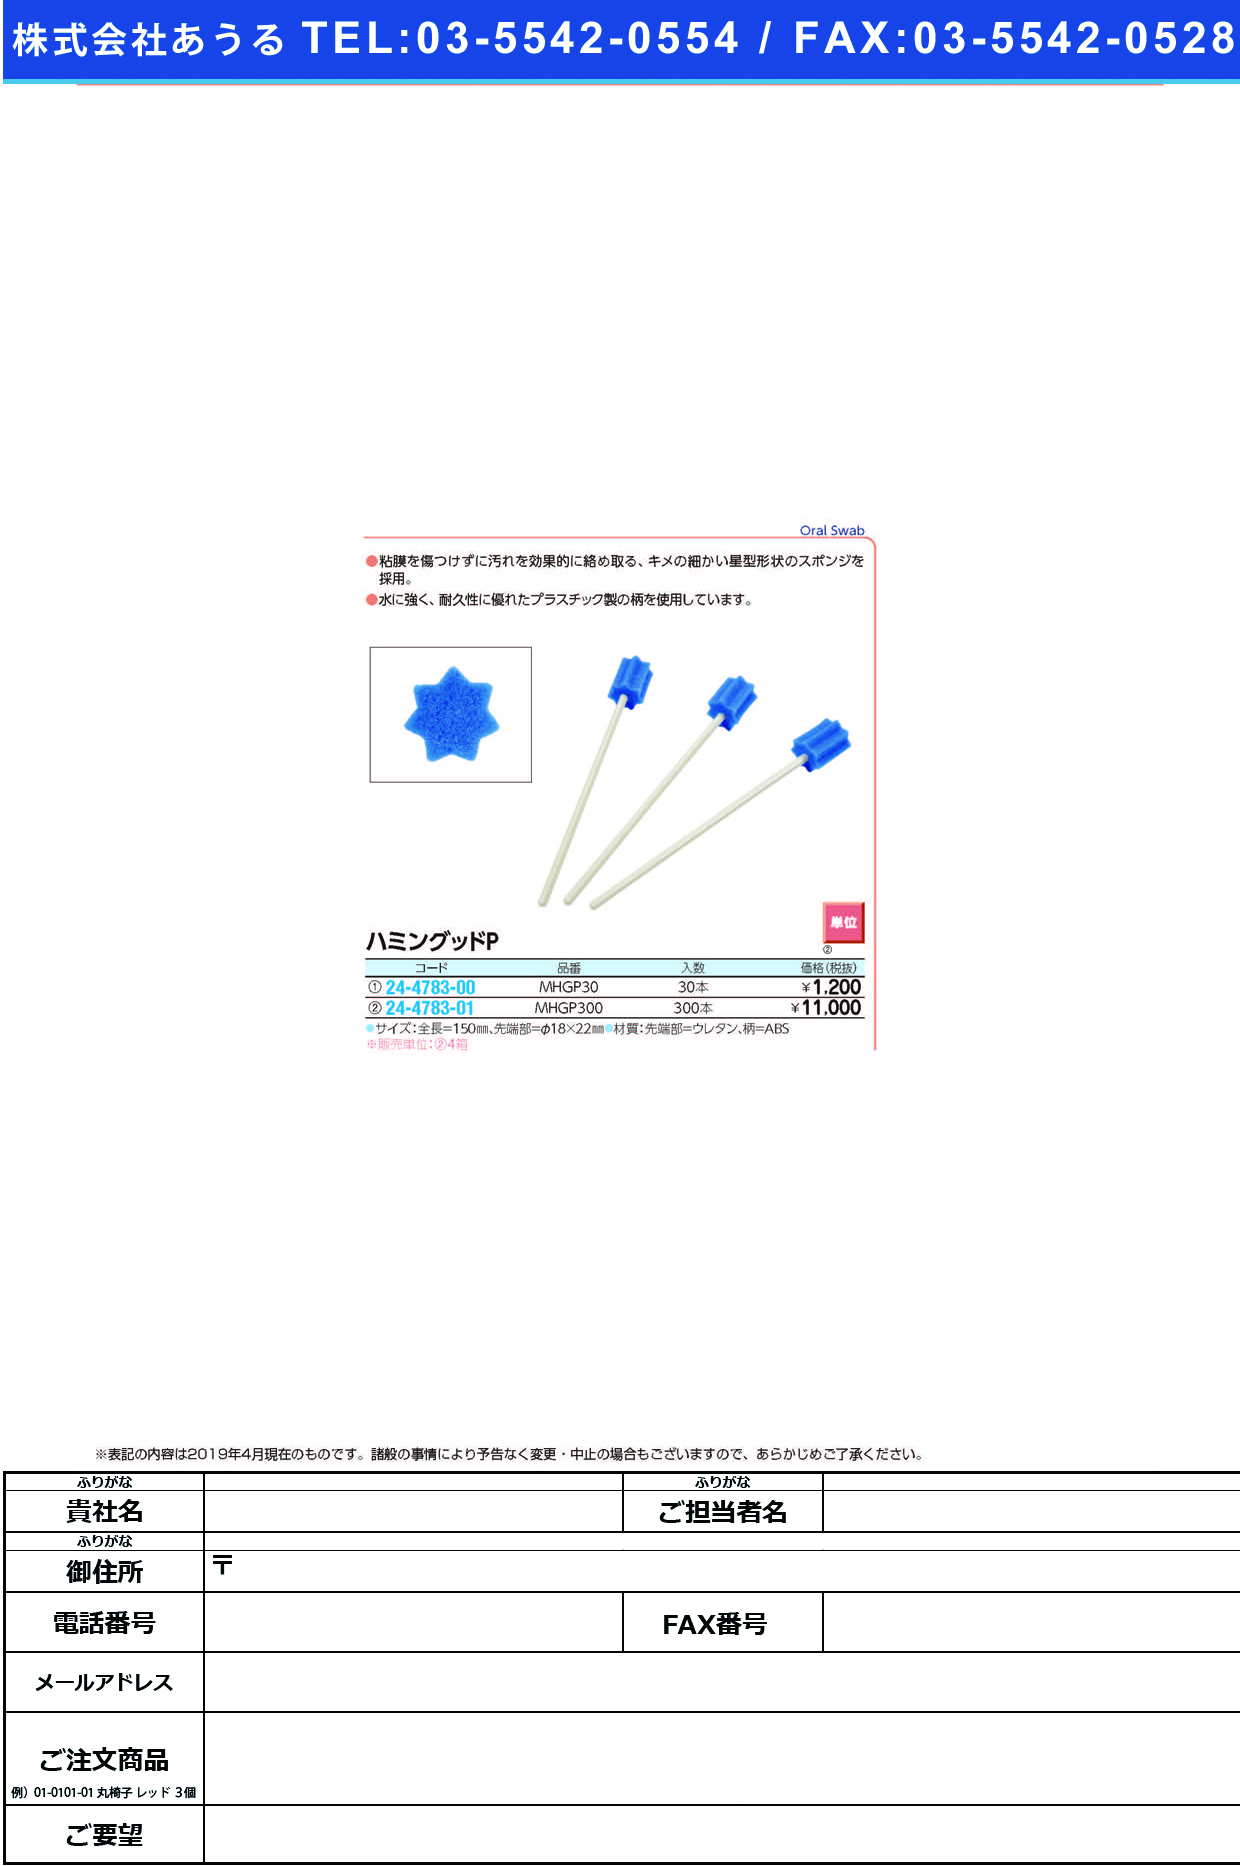 (24-4783-01)ハミングッドＰ MHGP300(300ﾎﾟﾝｲﾘ) ﾊﾐﾝｸﾞｯﾄﾞP(モルテン)【4箱単位】【2019年カタログ商品】